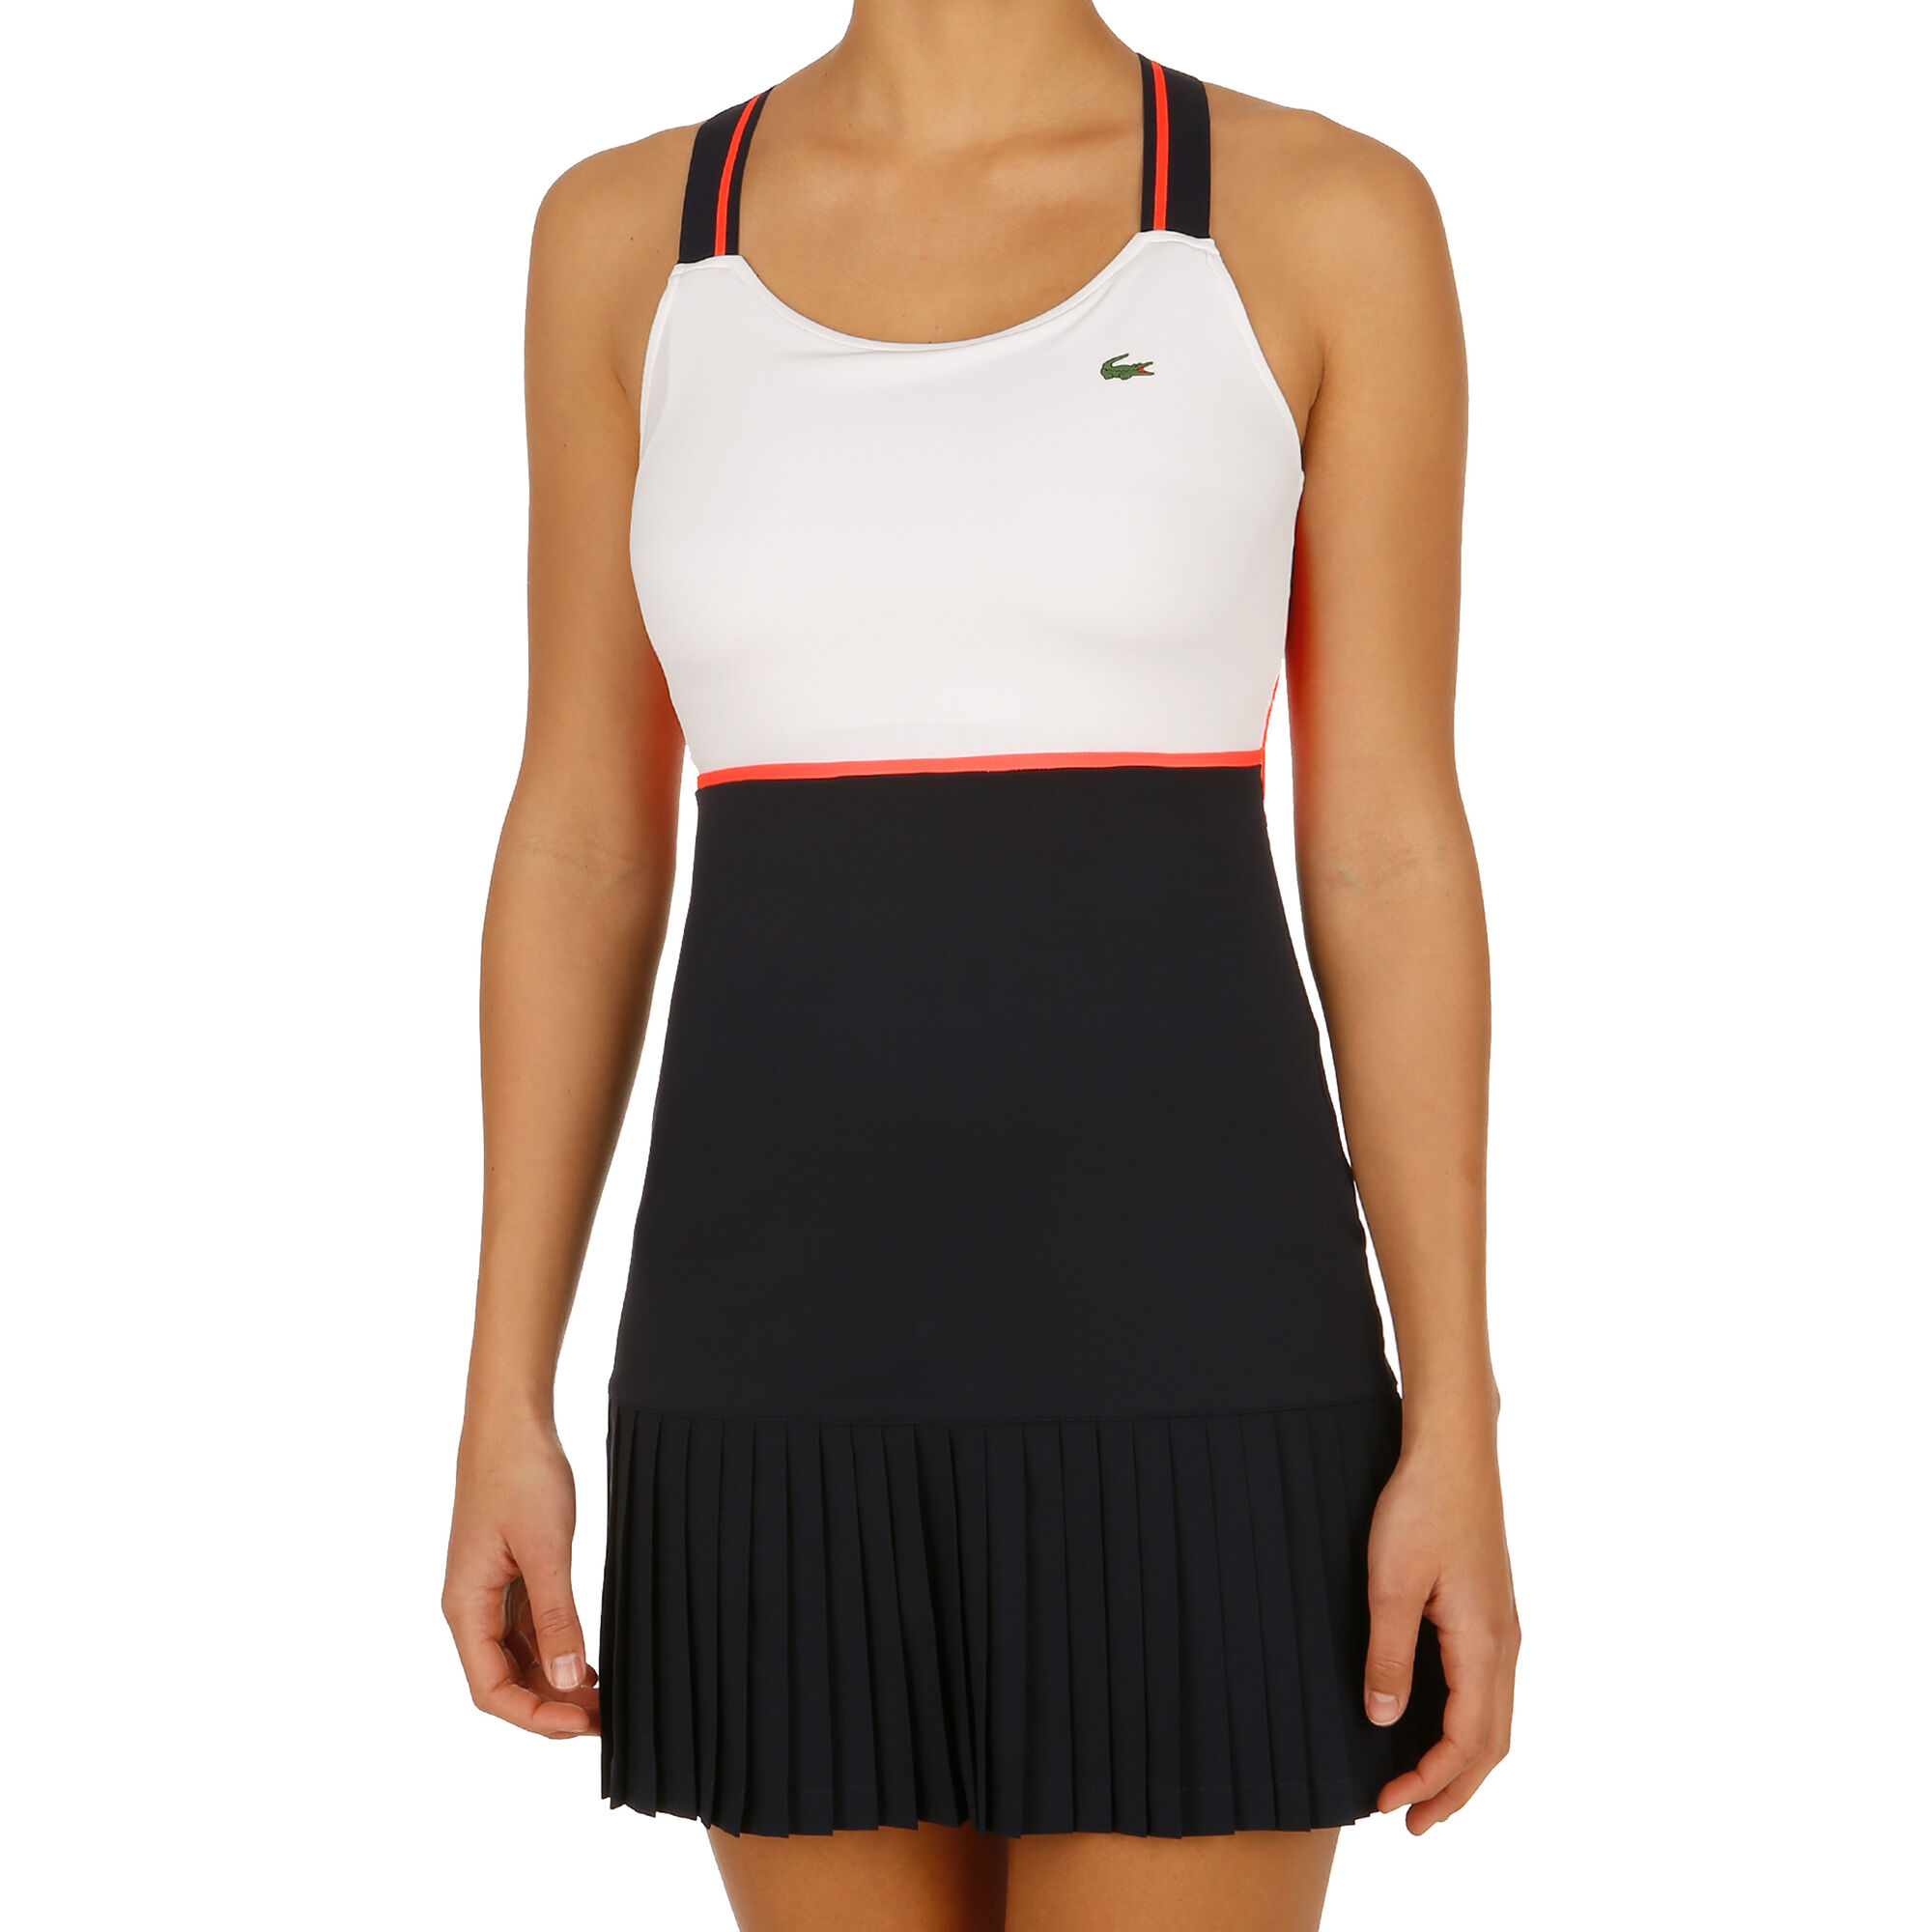 Lacoste Kleid Damen Weiß, Dunkelblau online kaufen | Tennis Point DE | Blusenkleider